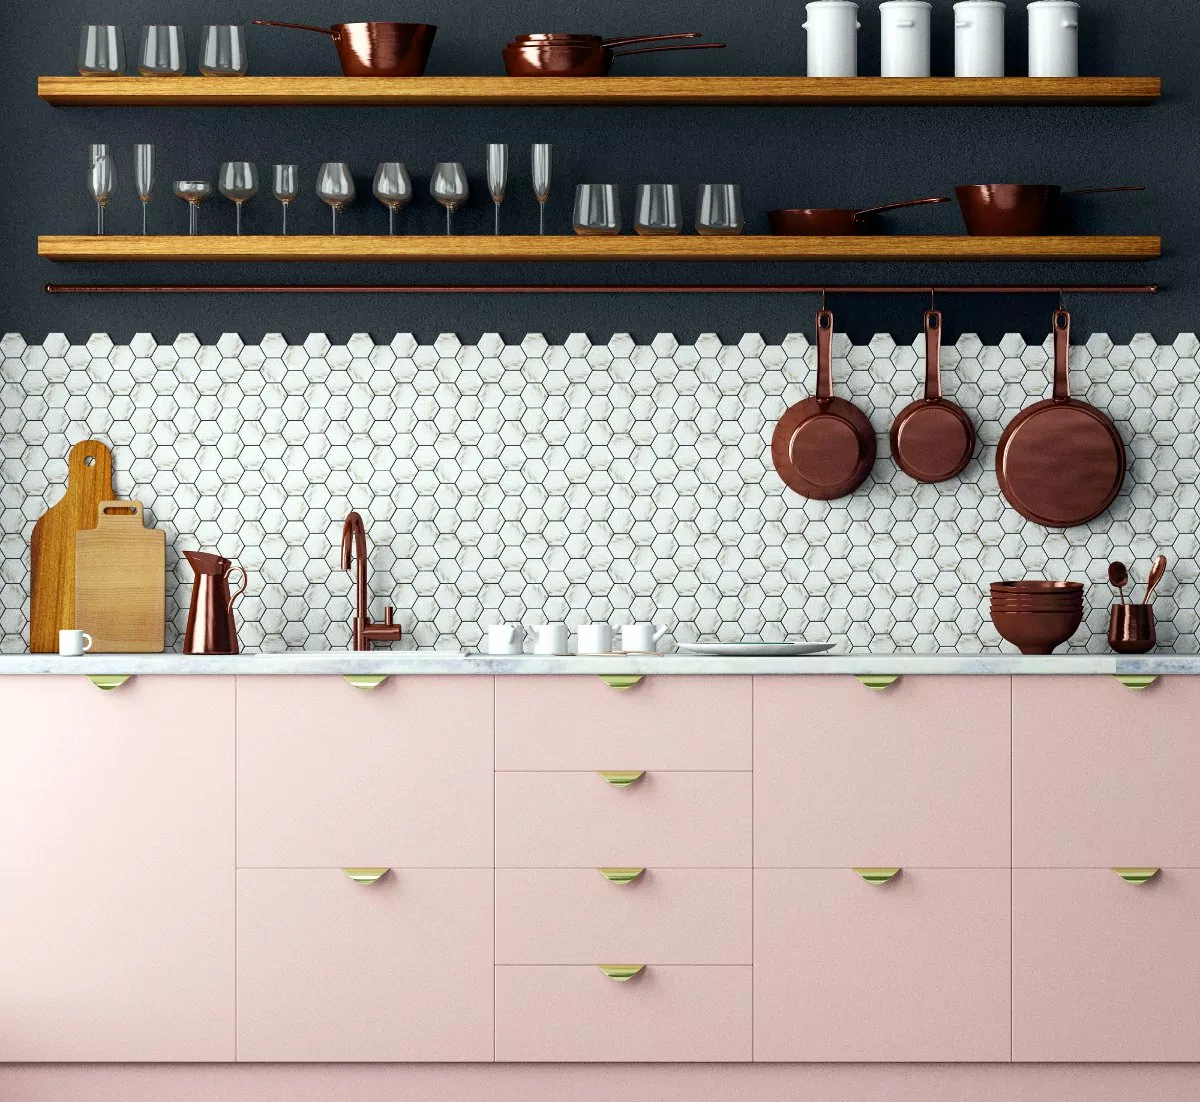 Dlaczego projektant wnętrz, kuchnia z ciemna ścianą różowe szafki kuchenne kuchnia z półkami zamiast szafek wiszących, mozaika na ścianie w kuchni pomiędzy szafkami, złote uchwyty do szafek w kuchni